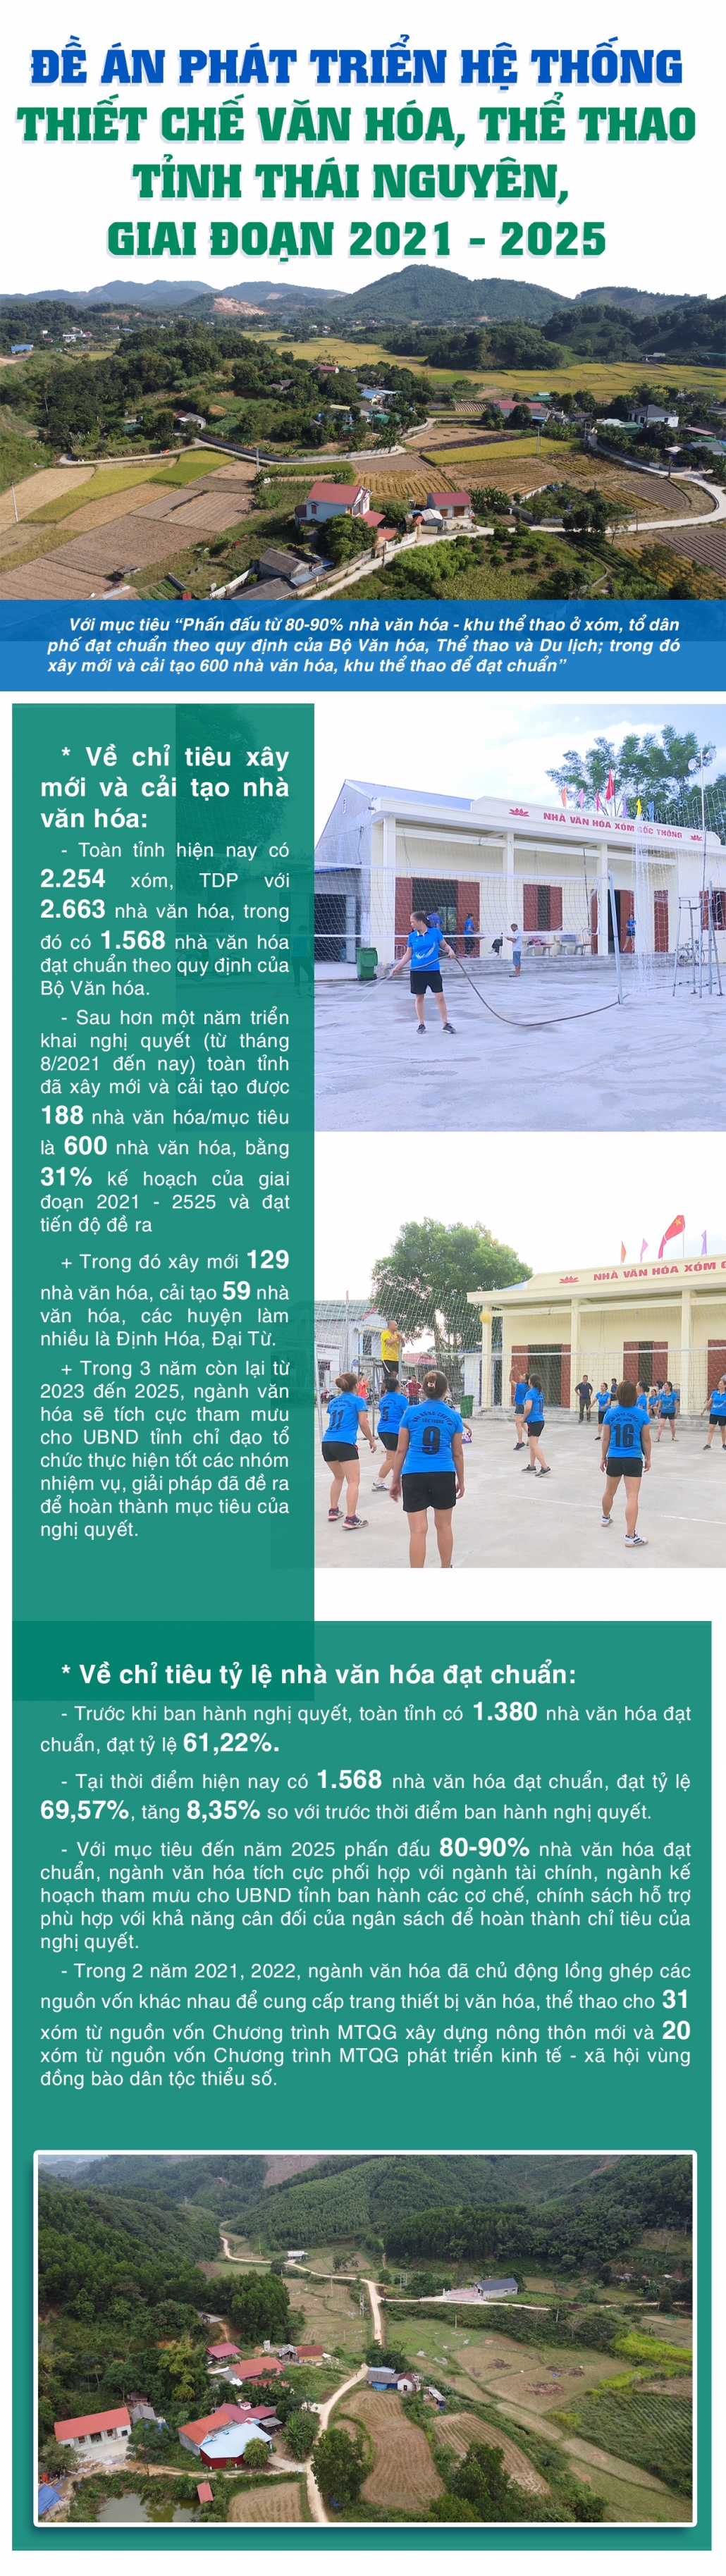 [Infographic] Đề án phát triển hệ thống thiết chế văn hóa, thể thao tỉnh Thái Nguyên, giai đoạn 2021 - 2025